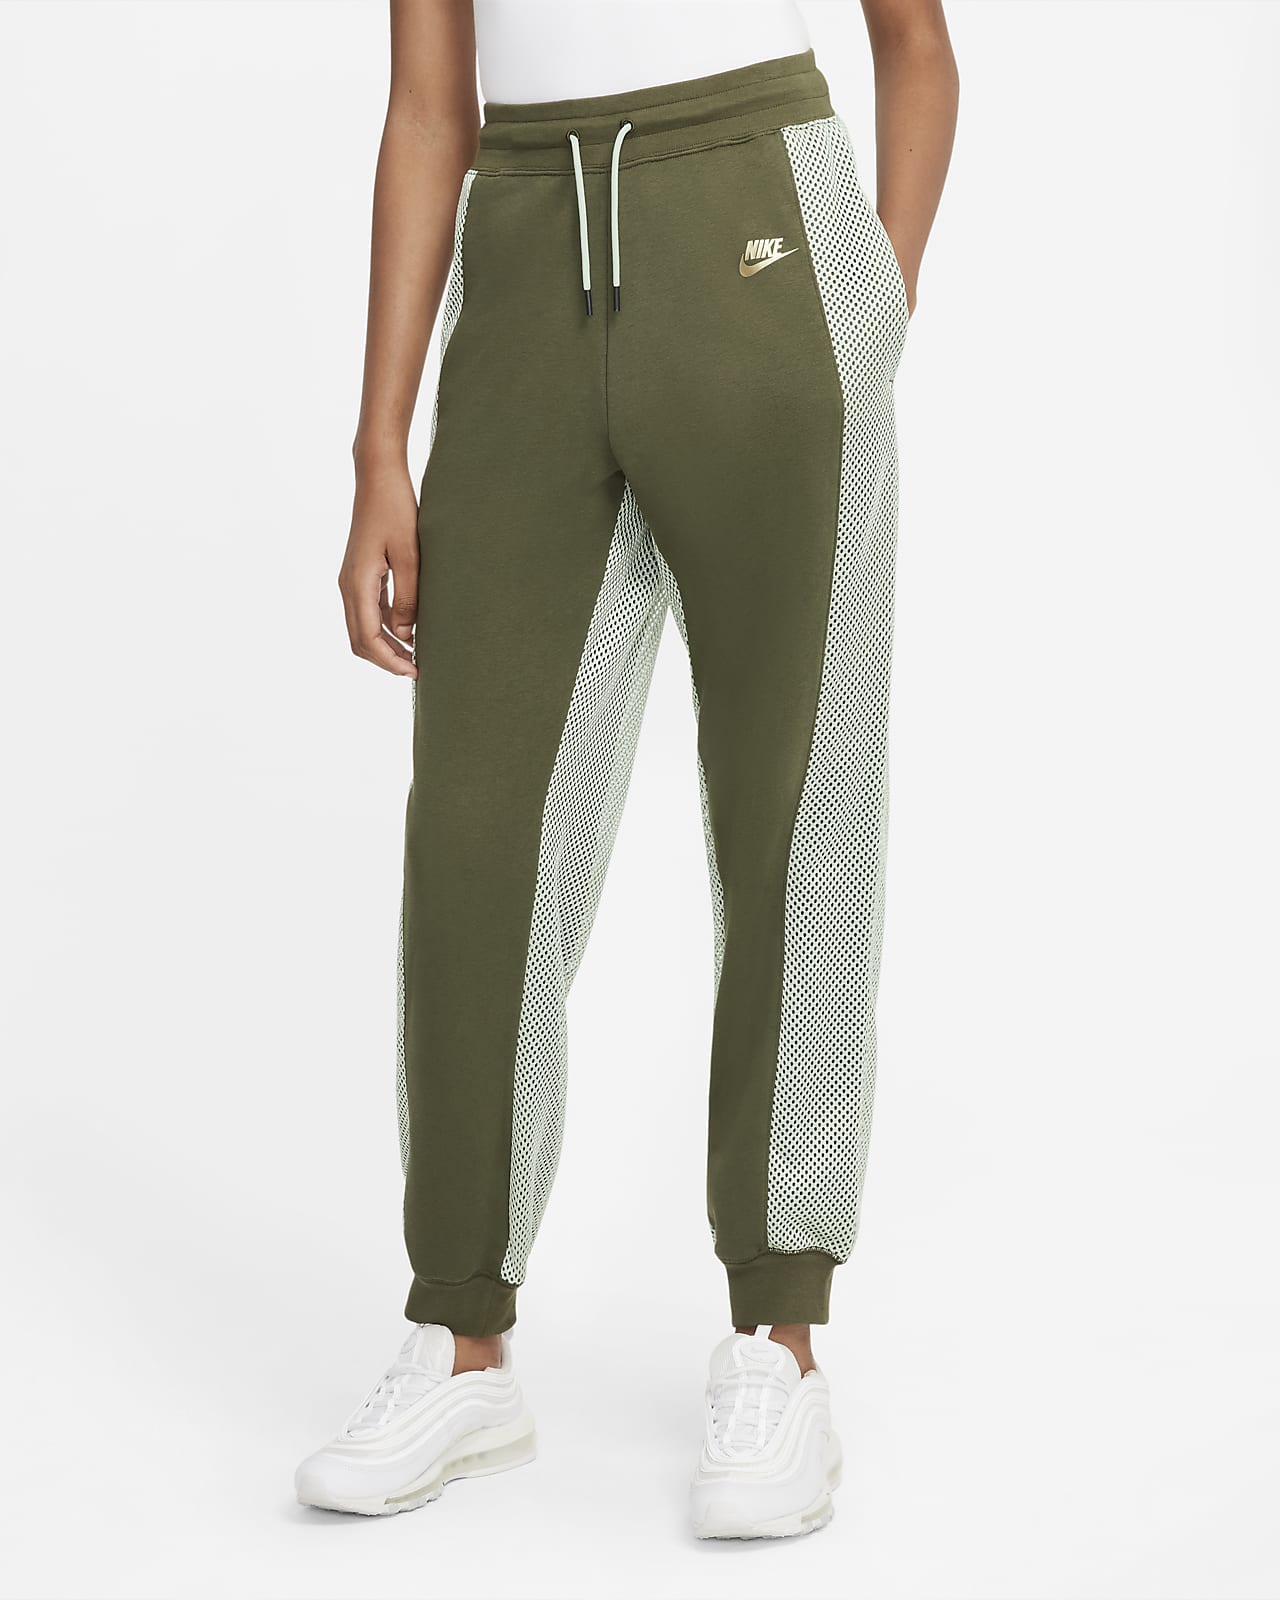 Pantaloni da tennis in fleece Serena Williams Design Crew - Donna